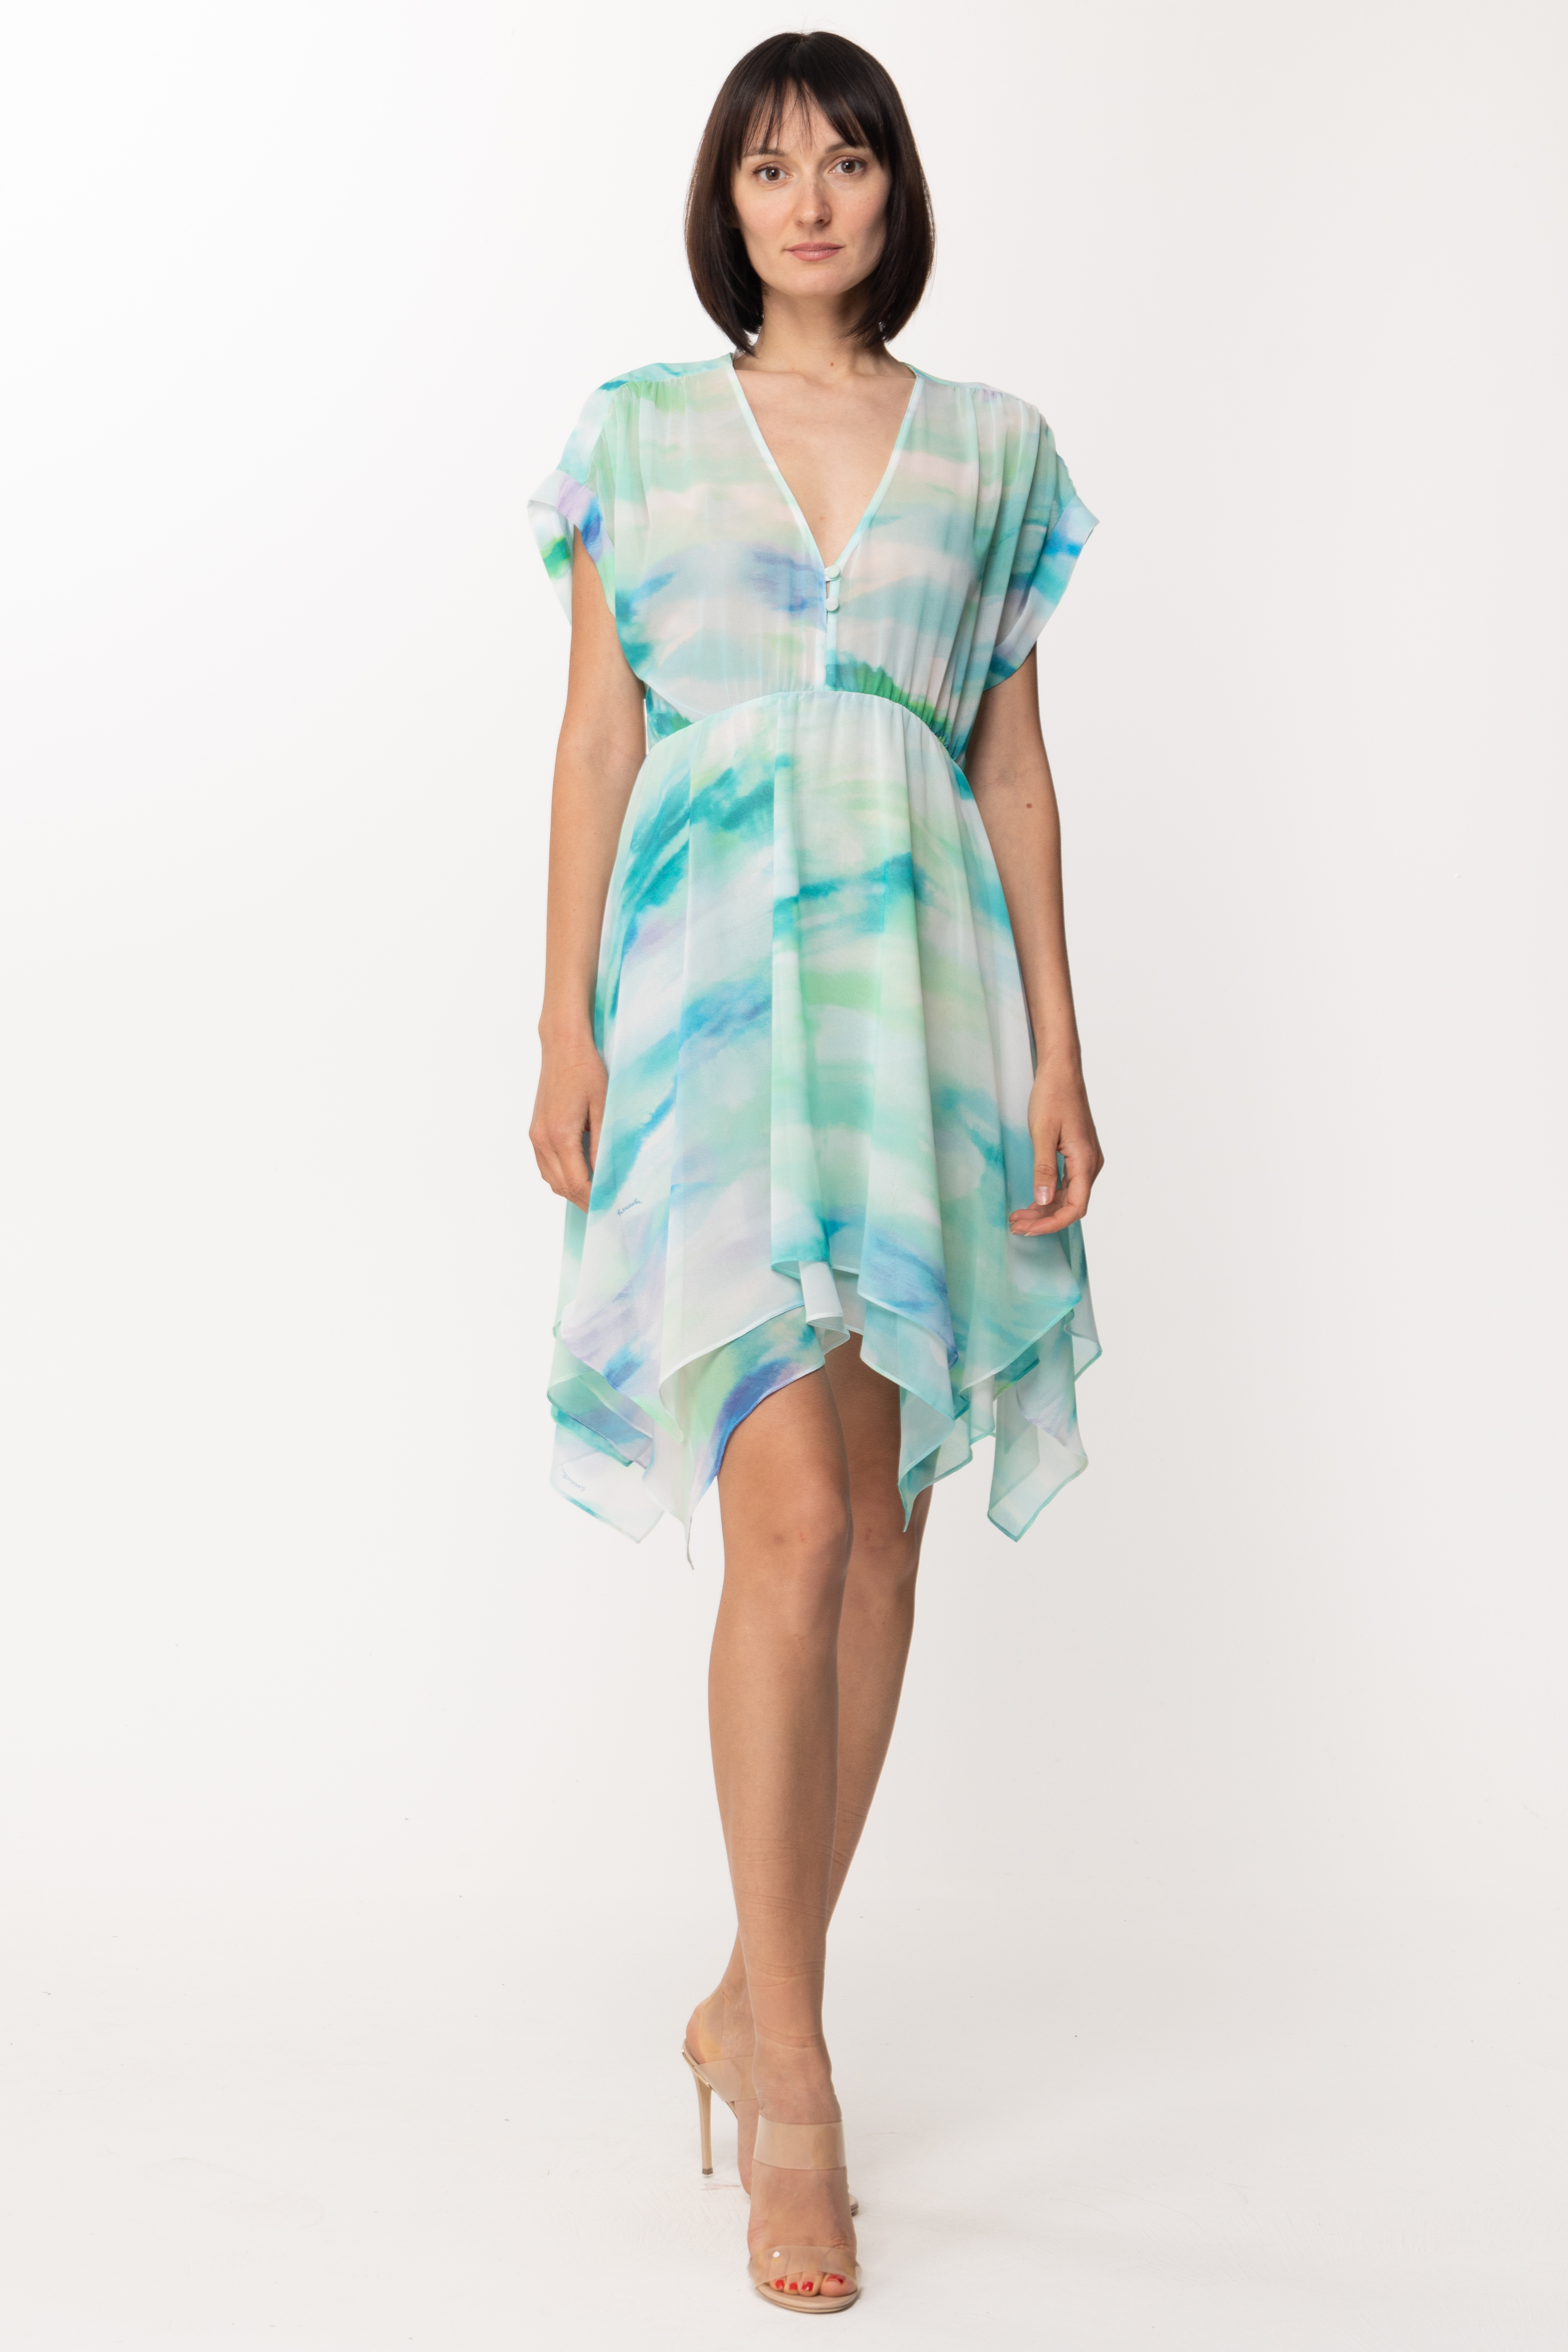 Podgląd: Patrizia Pepe Asymetryczna sukienka w akwarelowy print Aquatic Camu